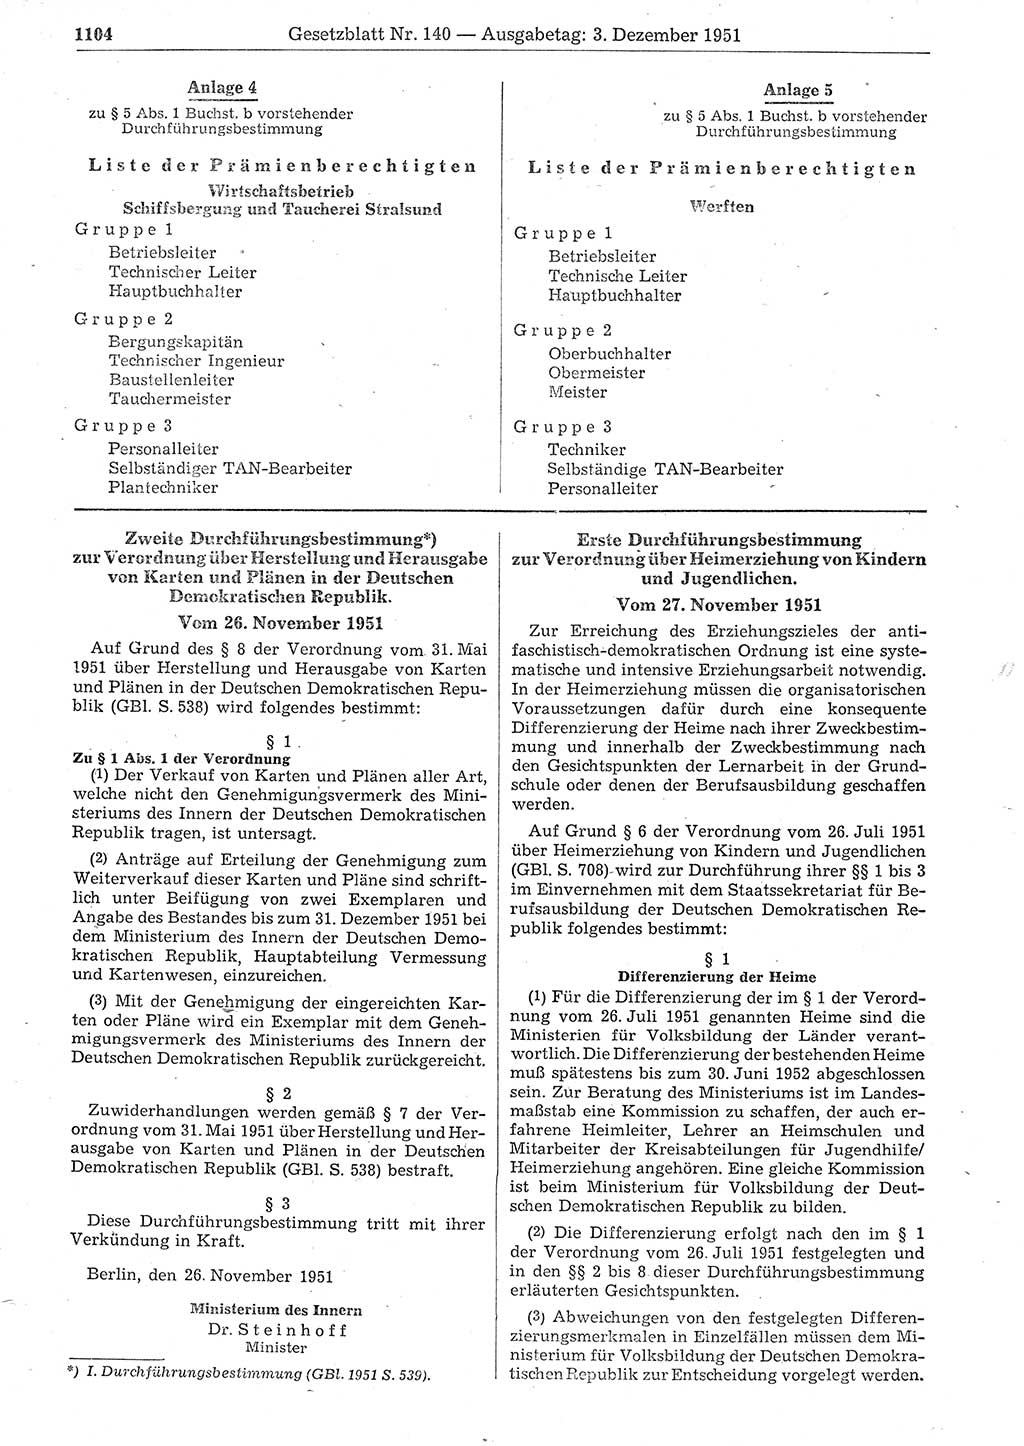 Gesetzblatt (GBl.) der Deutschen Demokratischen Republik (DDR) 1951, Seite 1104 (GBl. DDR 1951, S. 1104)